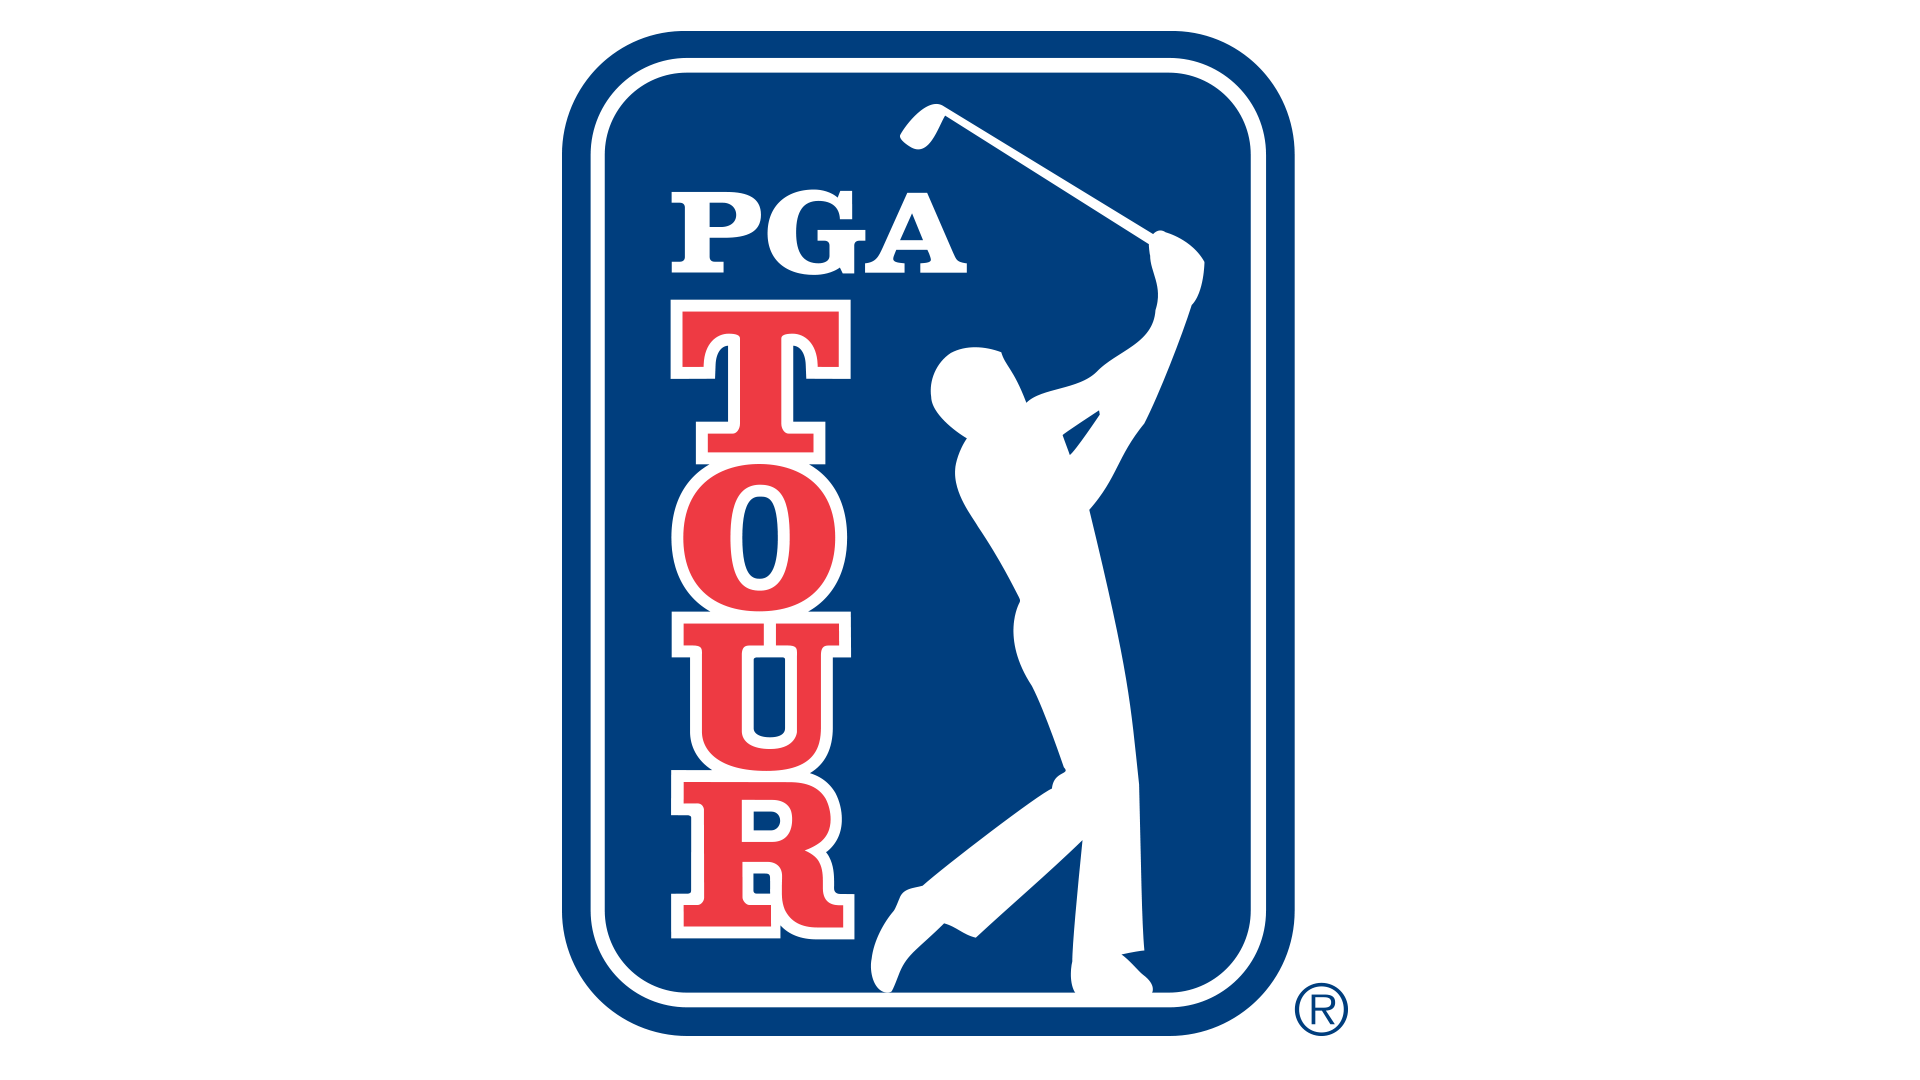 PGA tour logo